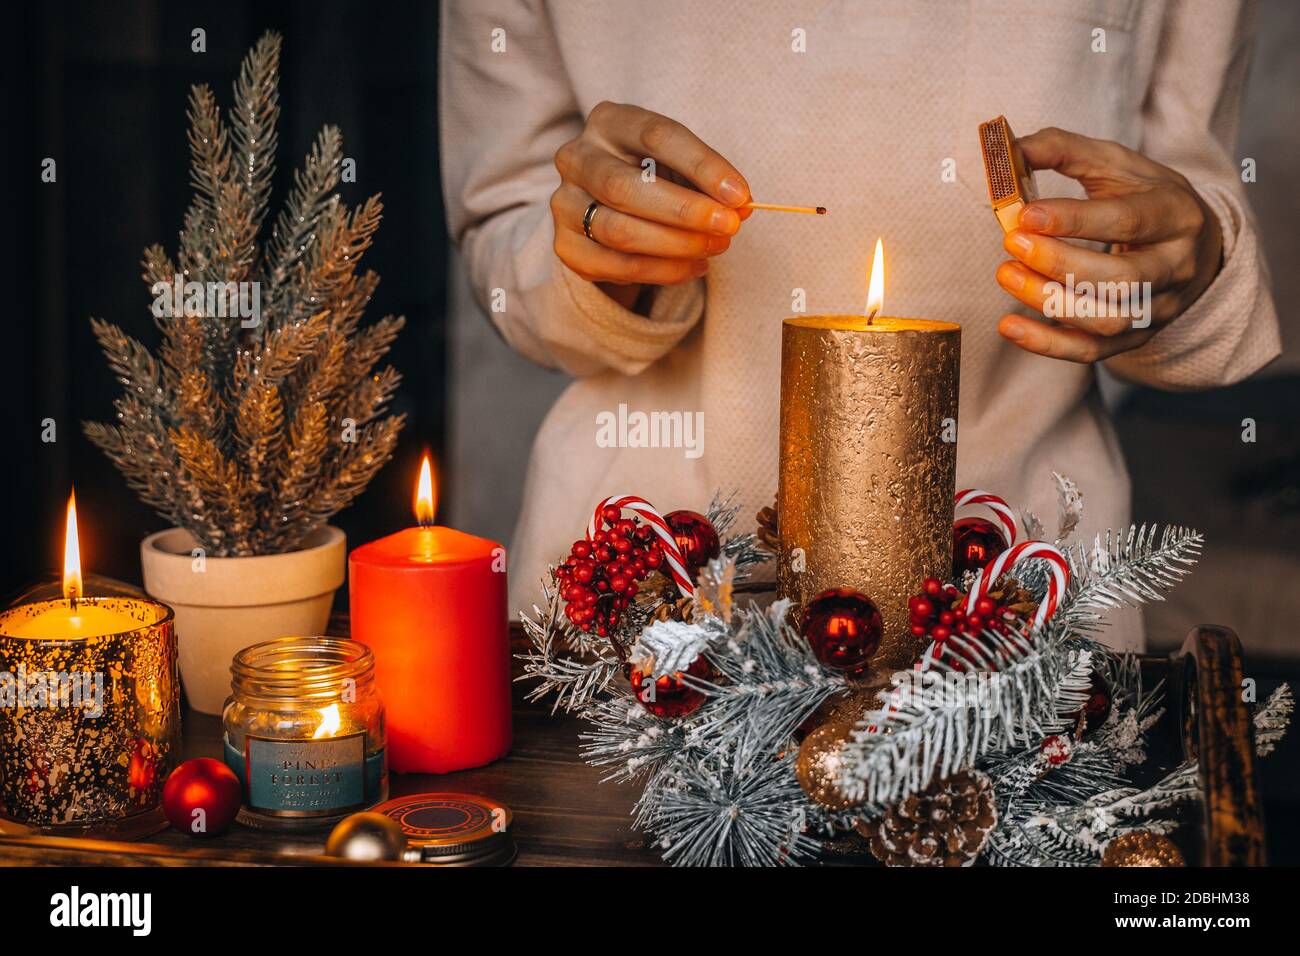 La mujer enciende velas en la mesa decorada en Navidad. Vela de año Nuevo,  tiempo de Adviento, luces cálidas, adornos de decoración de invierno en el  viejo r Fotografía de stock -